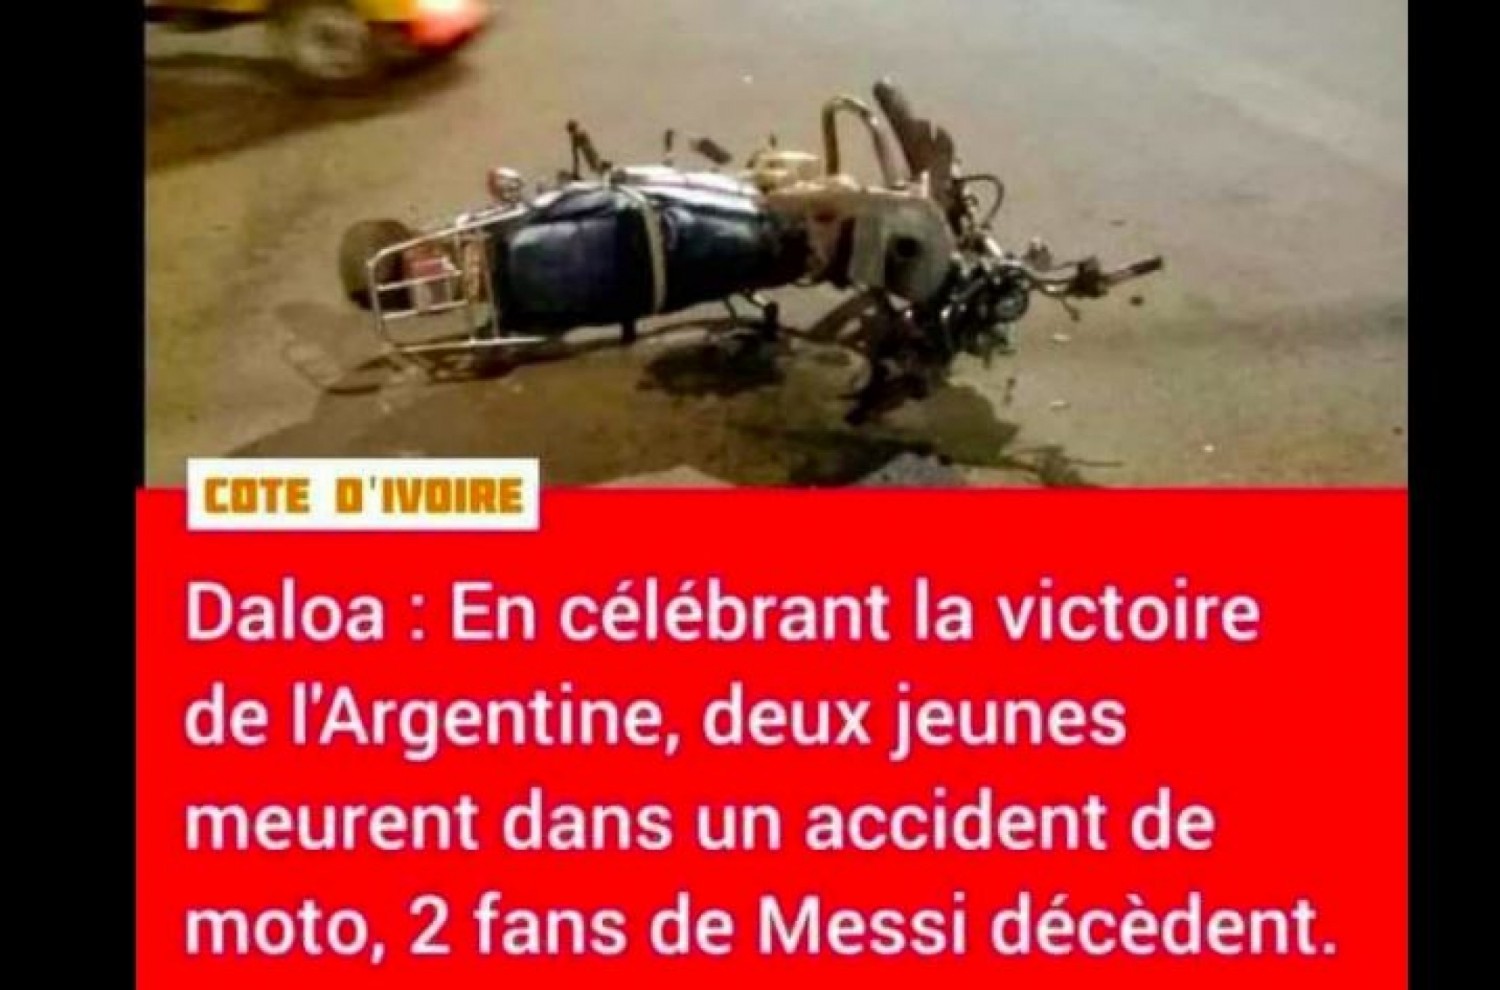 Côte d'Ivoire : Daloa, contrairement aux infox, aucun mort signalé dans la ville après la finale Argentine – France